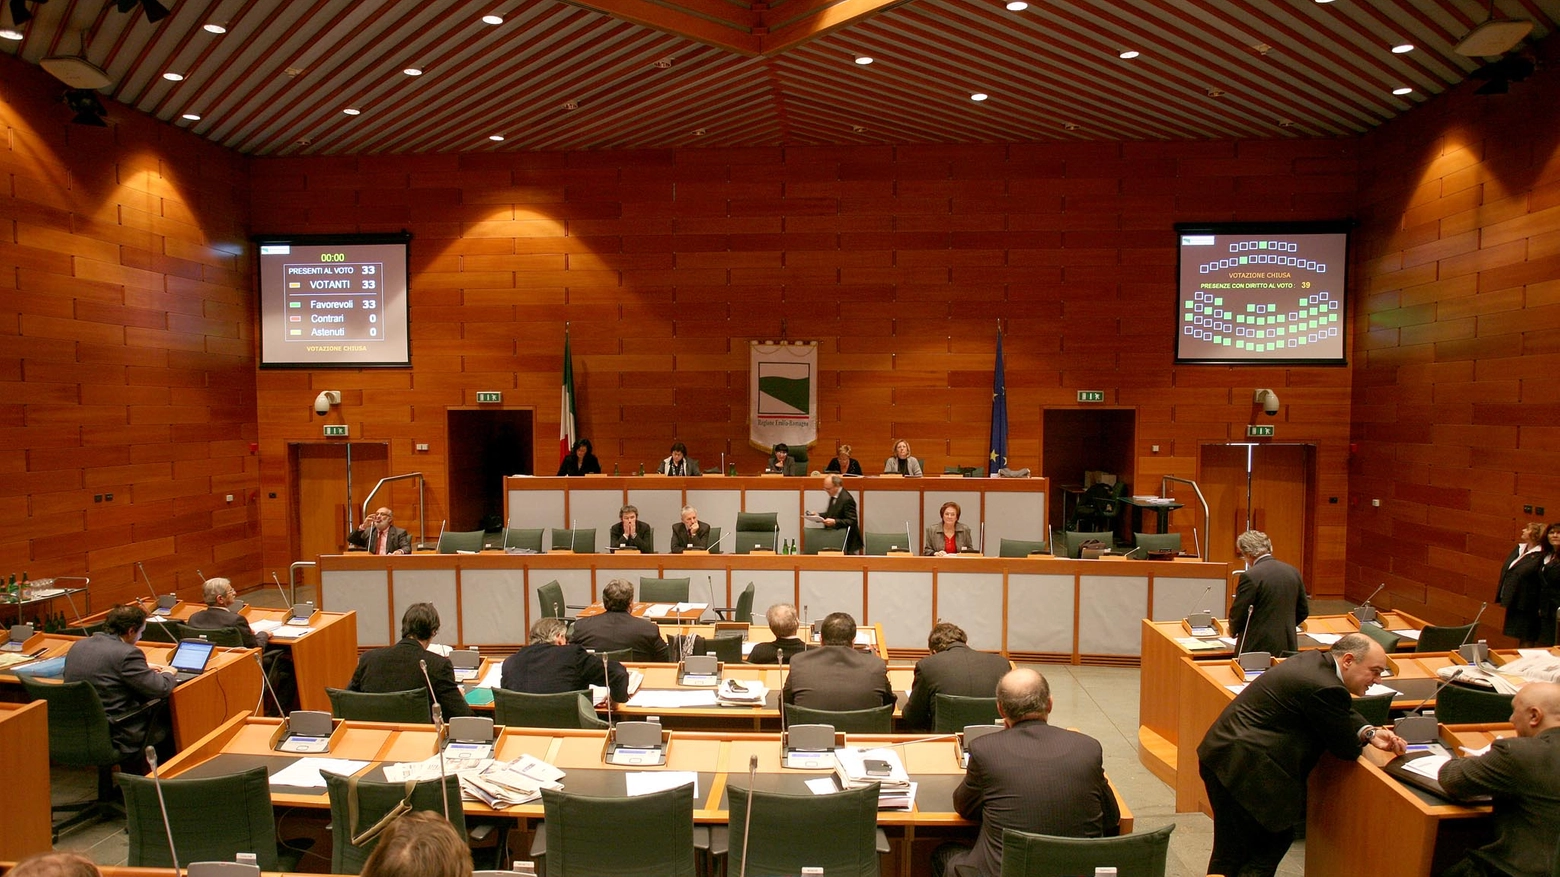 La sala del consiglio regionale dell'Emilia-Romagna (FotoSchicchi)